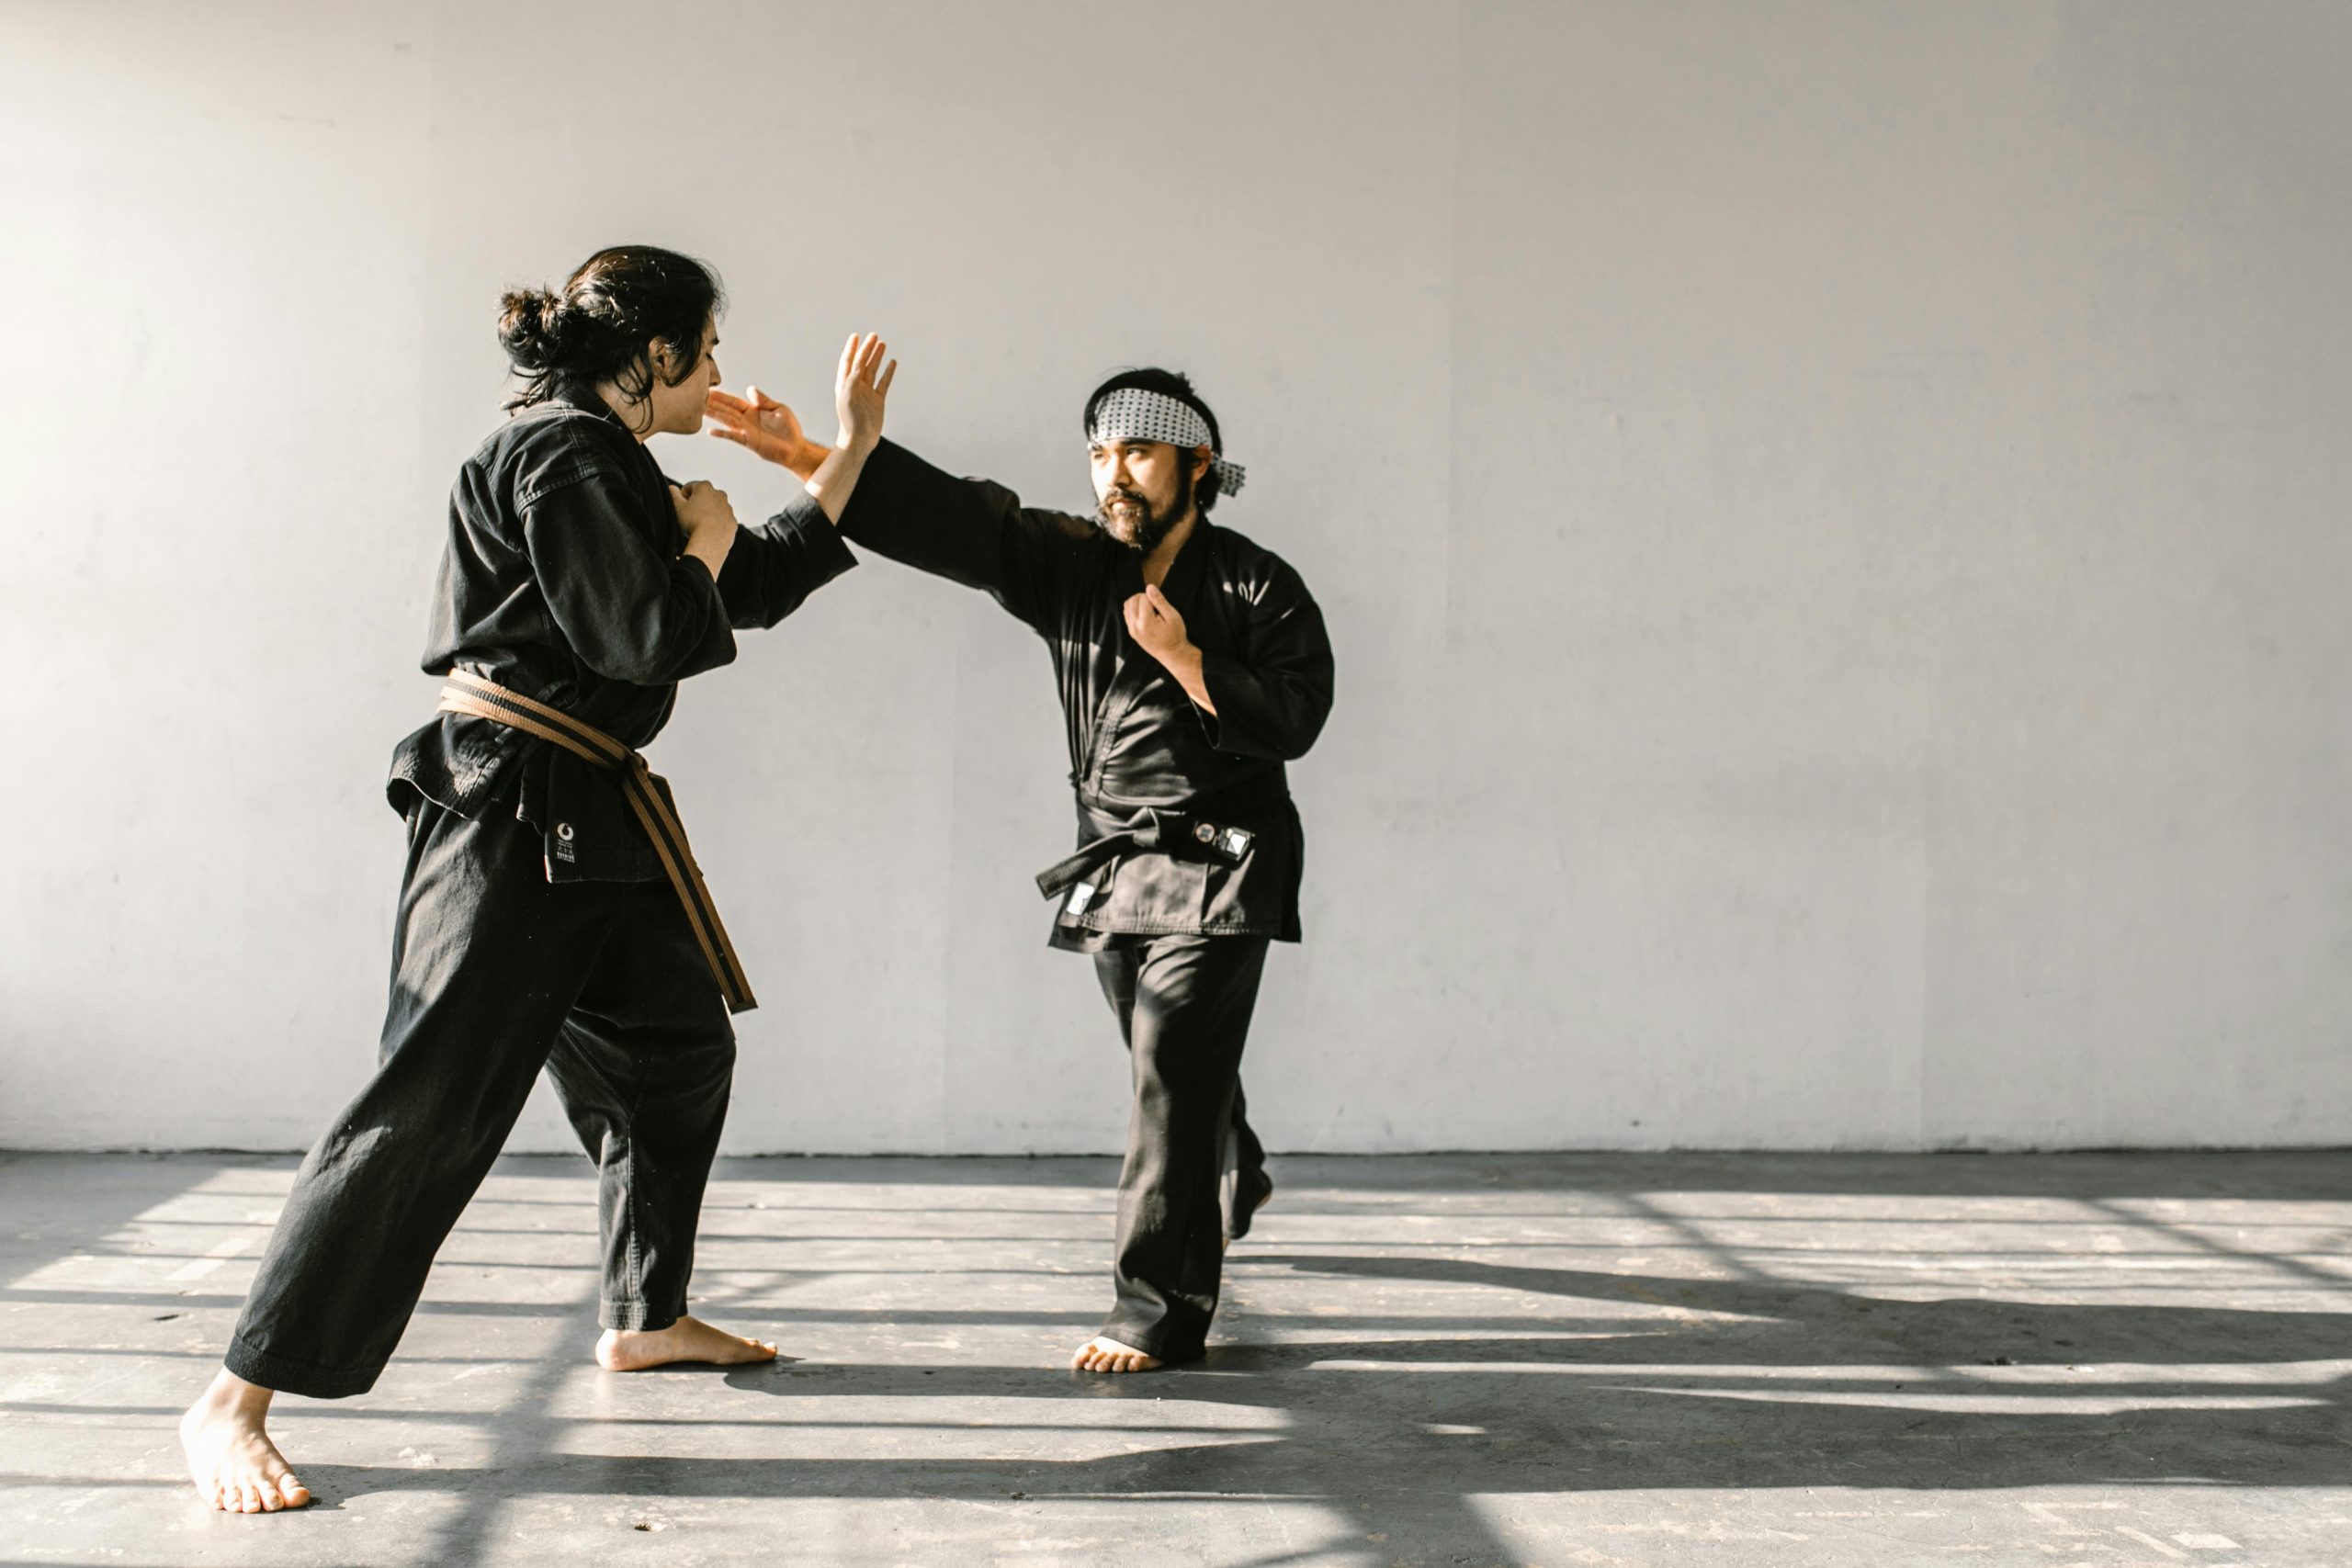 Self defense in martial arts